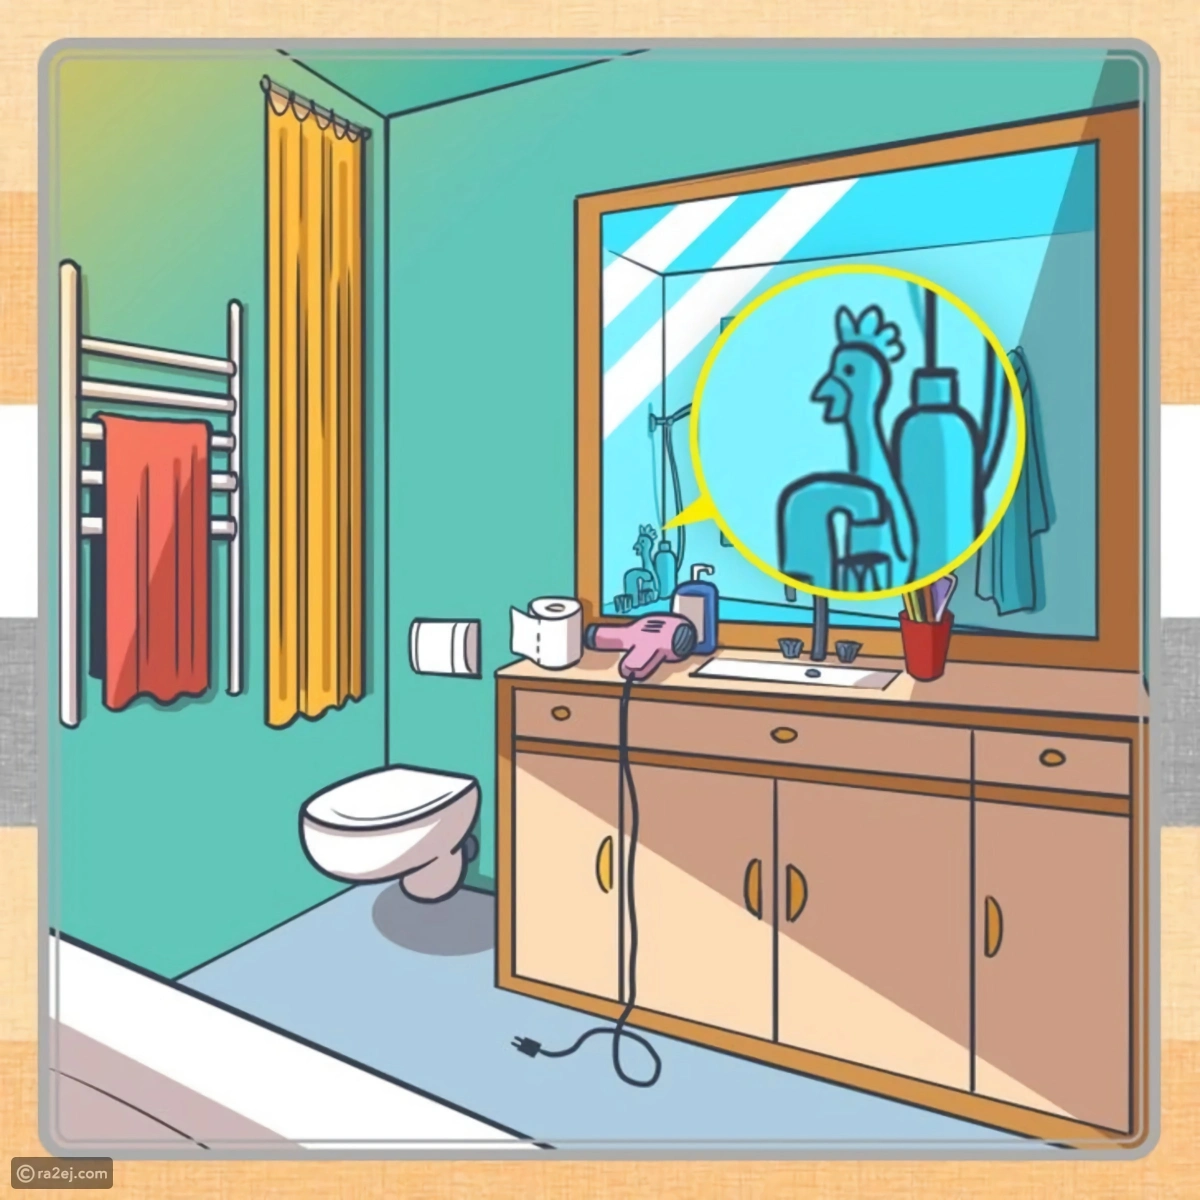 reponse du test d illusion optique inedit pour tester votre qi salle de bain coq